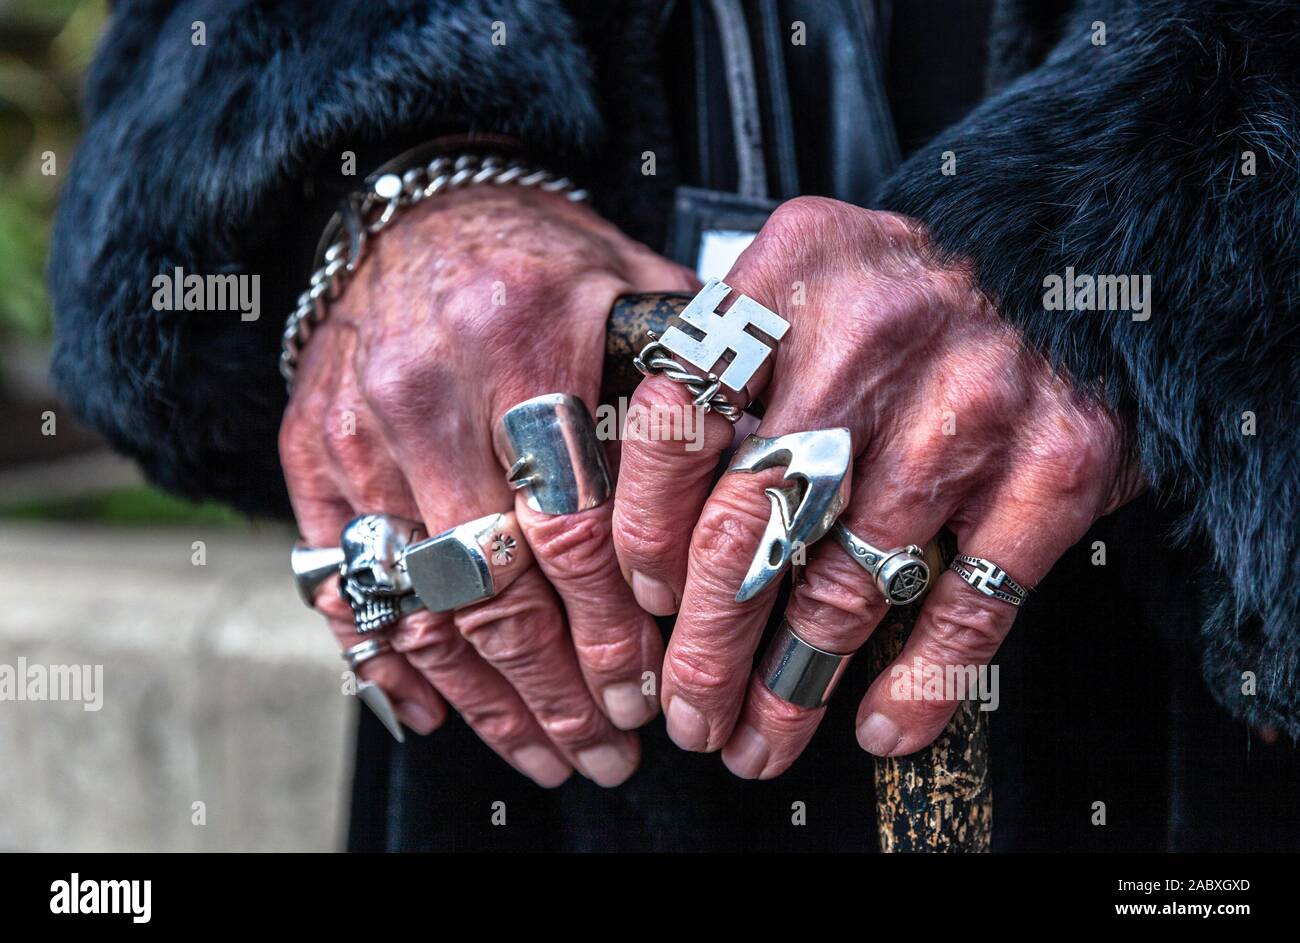 Las manos del hombre llevaba muchos anillos de metal Fotografía de stock -  Alamy